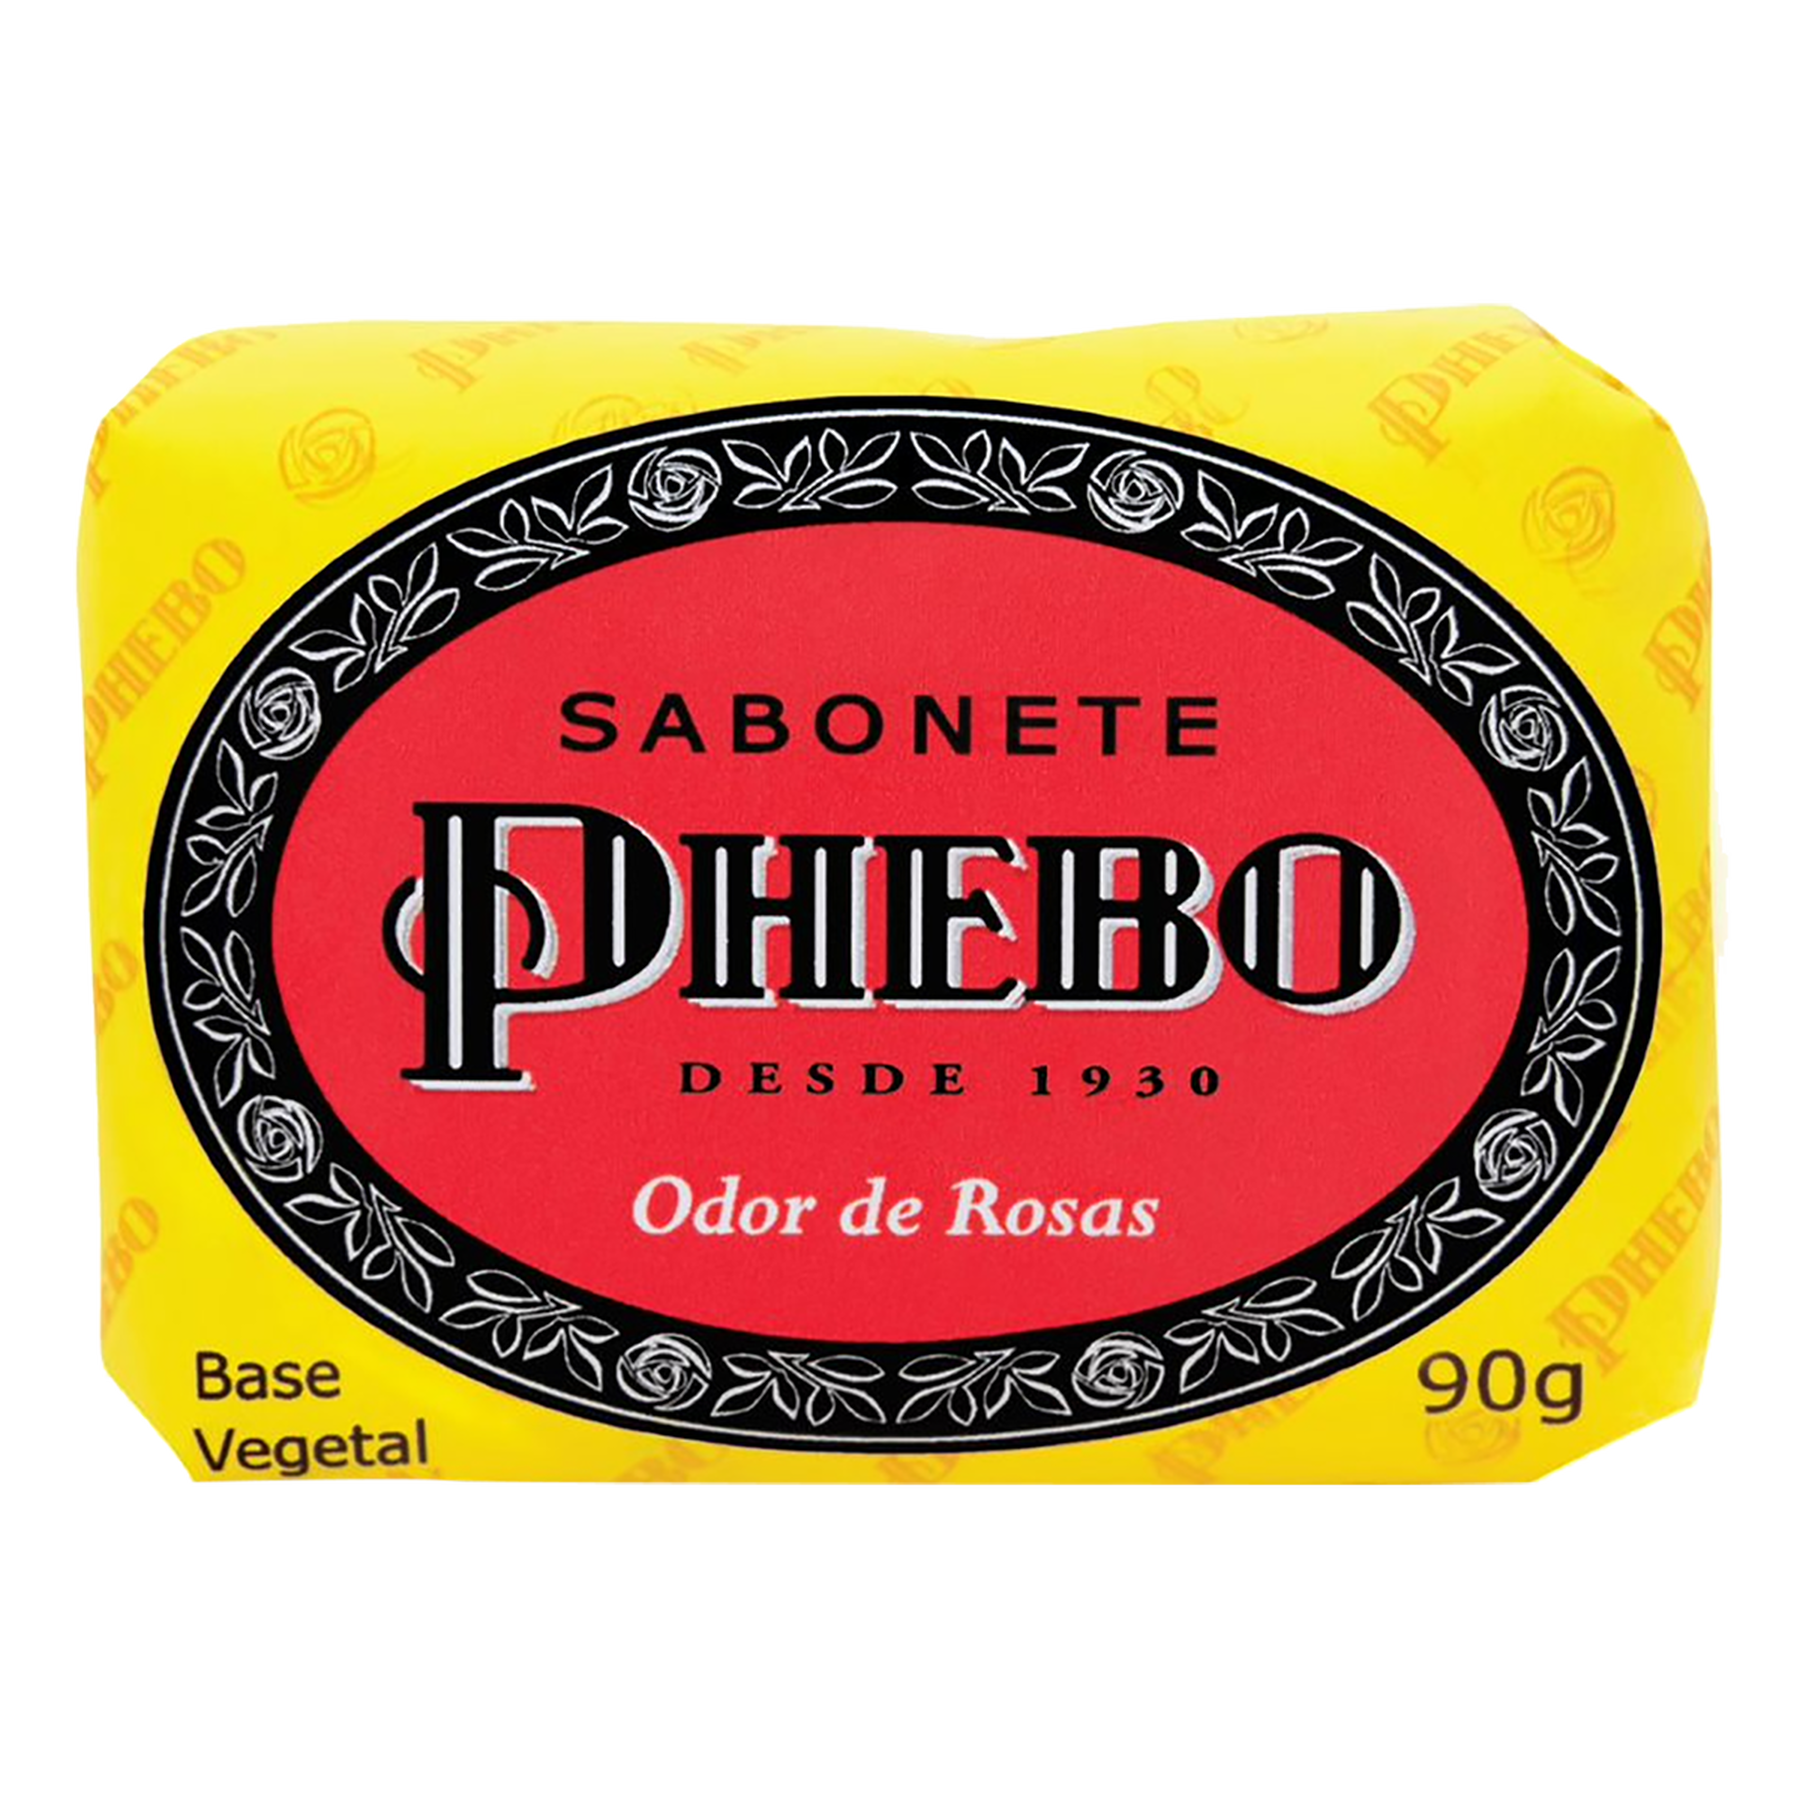 Sabonete em Barra Odor de Rosas Phebo 90g